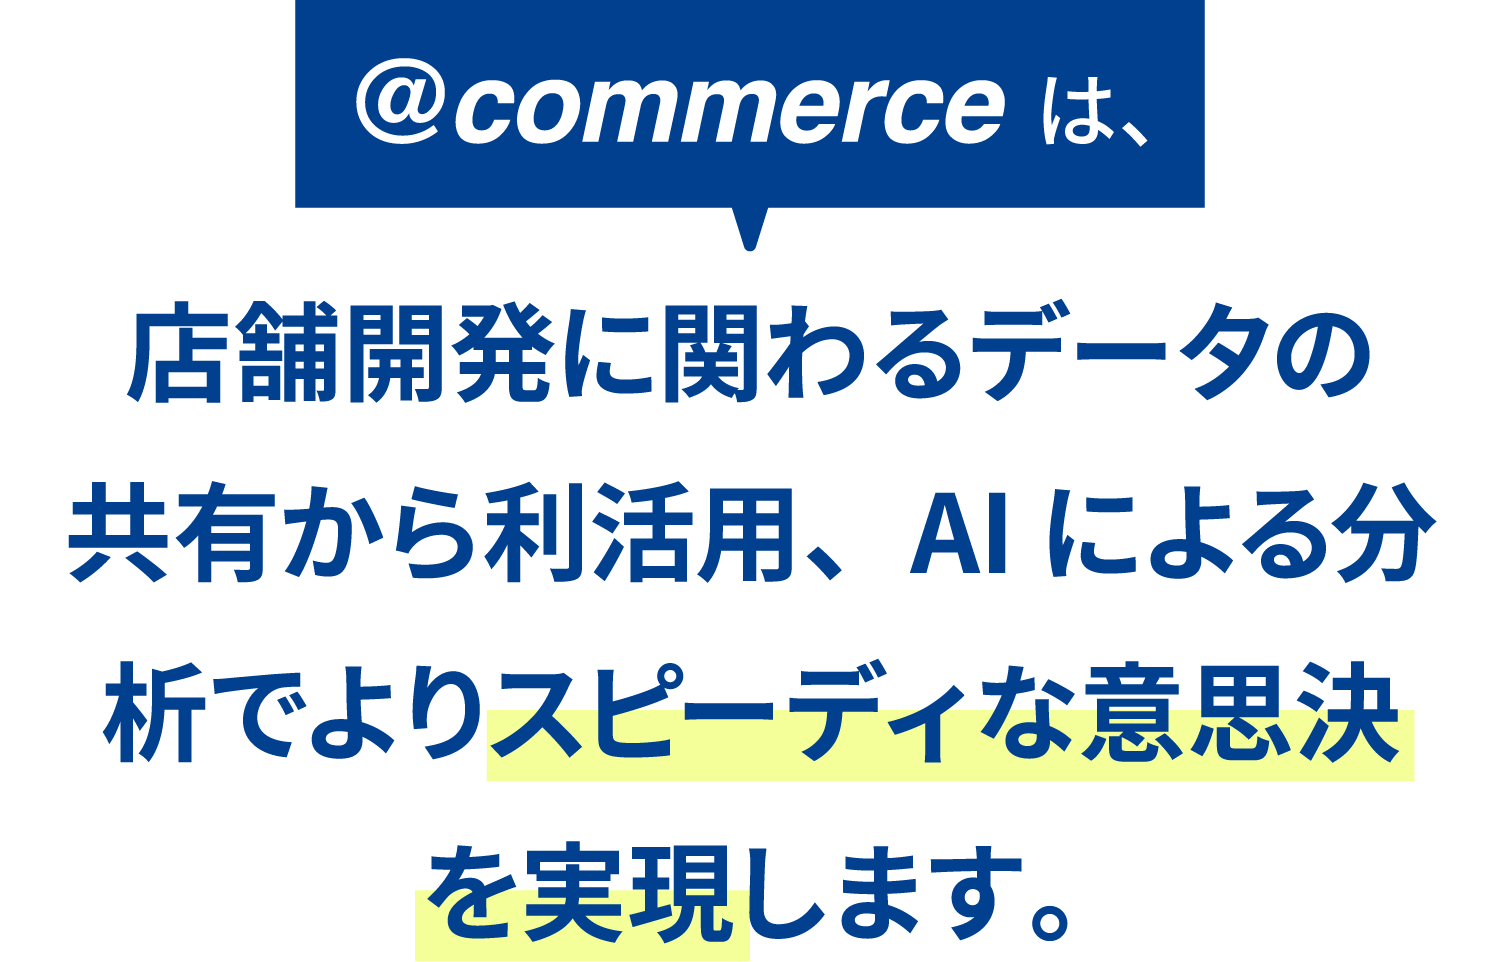 @commerceは、店舗開発に関わるデータの共有から利活用、AIによる分析でよりスピーディな意思決定を実現します。